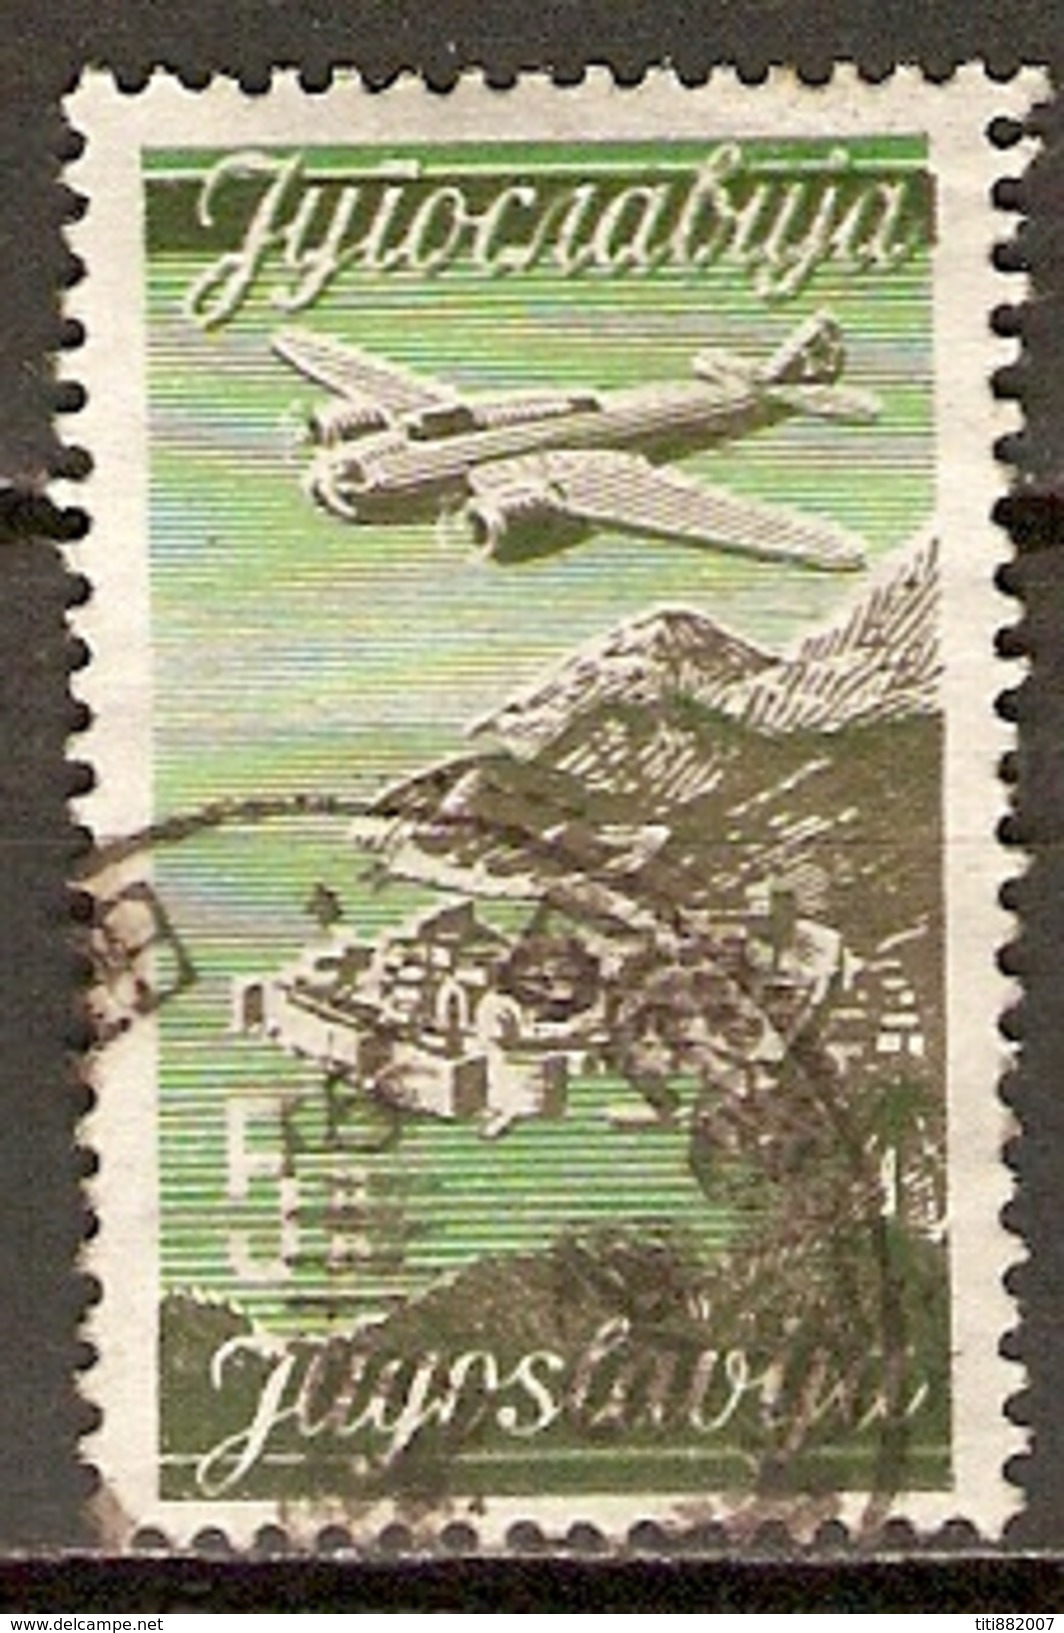 YOUGOSLAVIE     -    Aéro .   1947.   Y&T N° 20 Oblitéré.   Avion. - Poste Aérienne